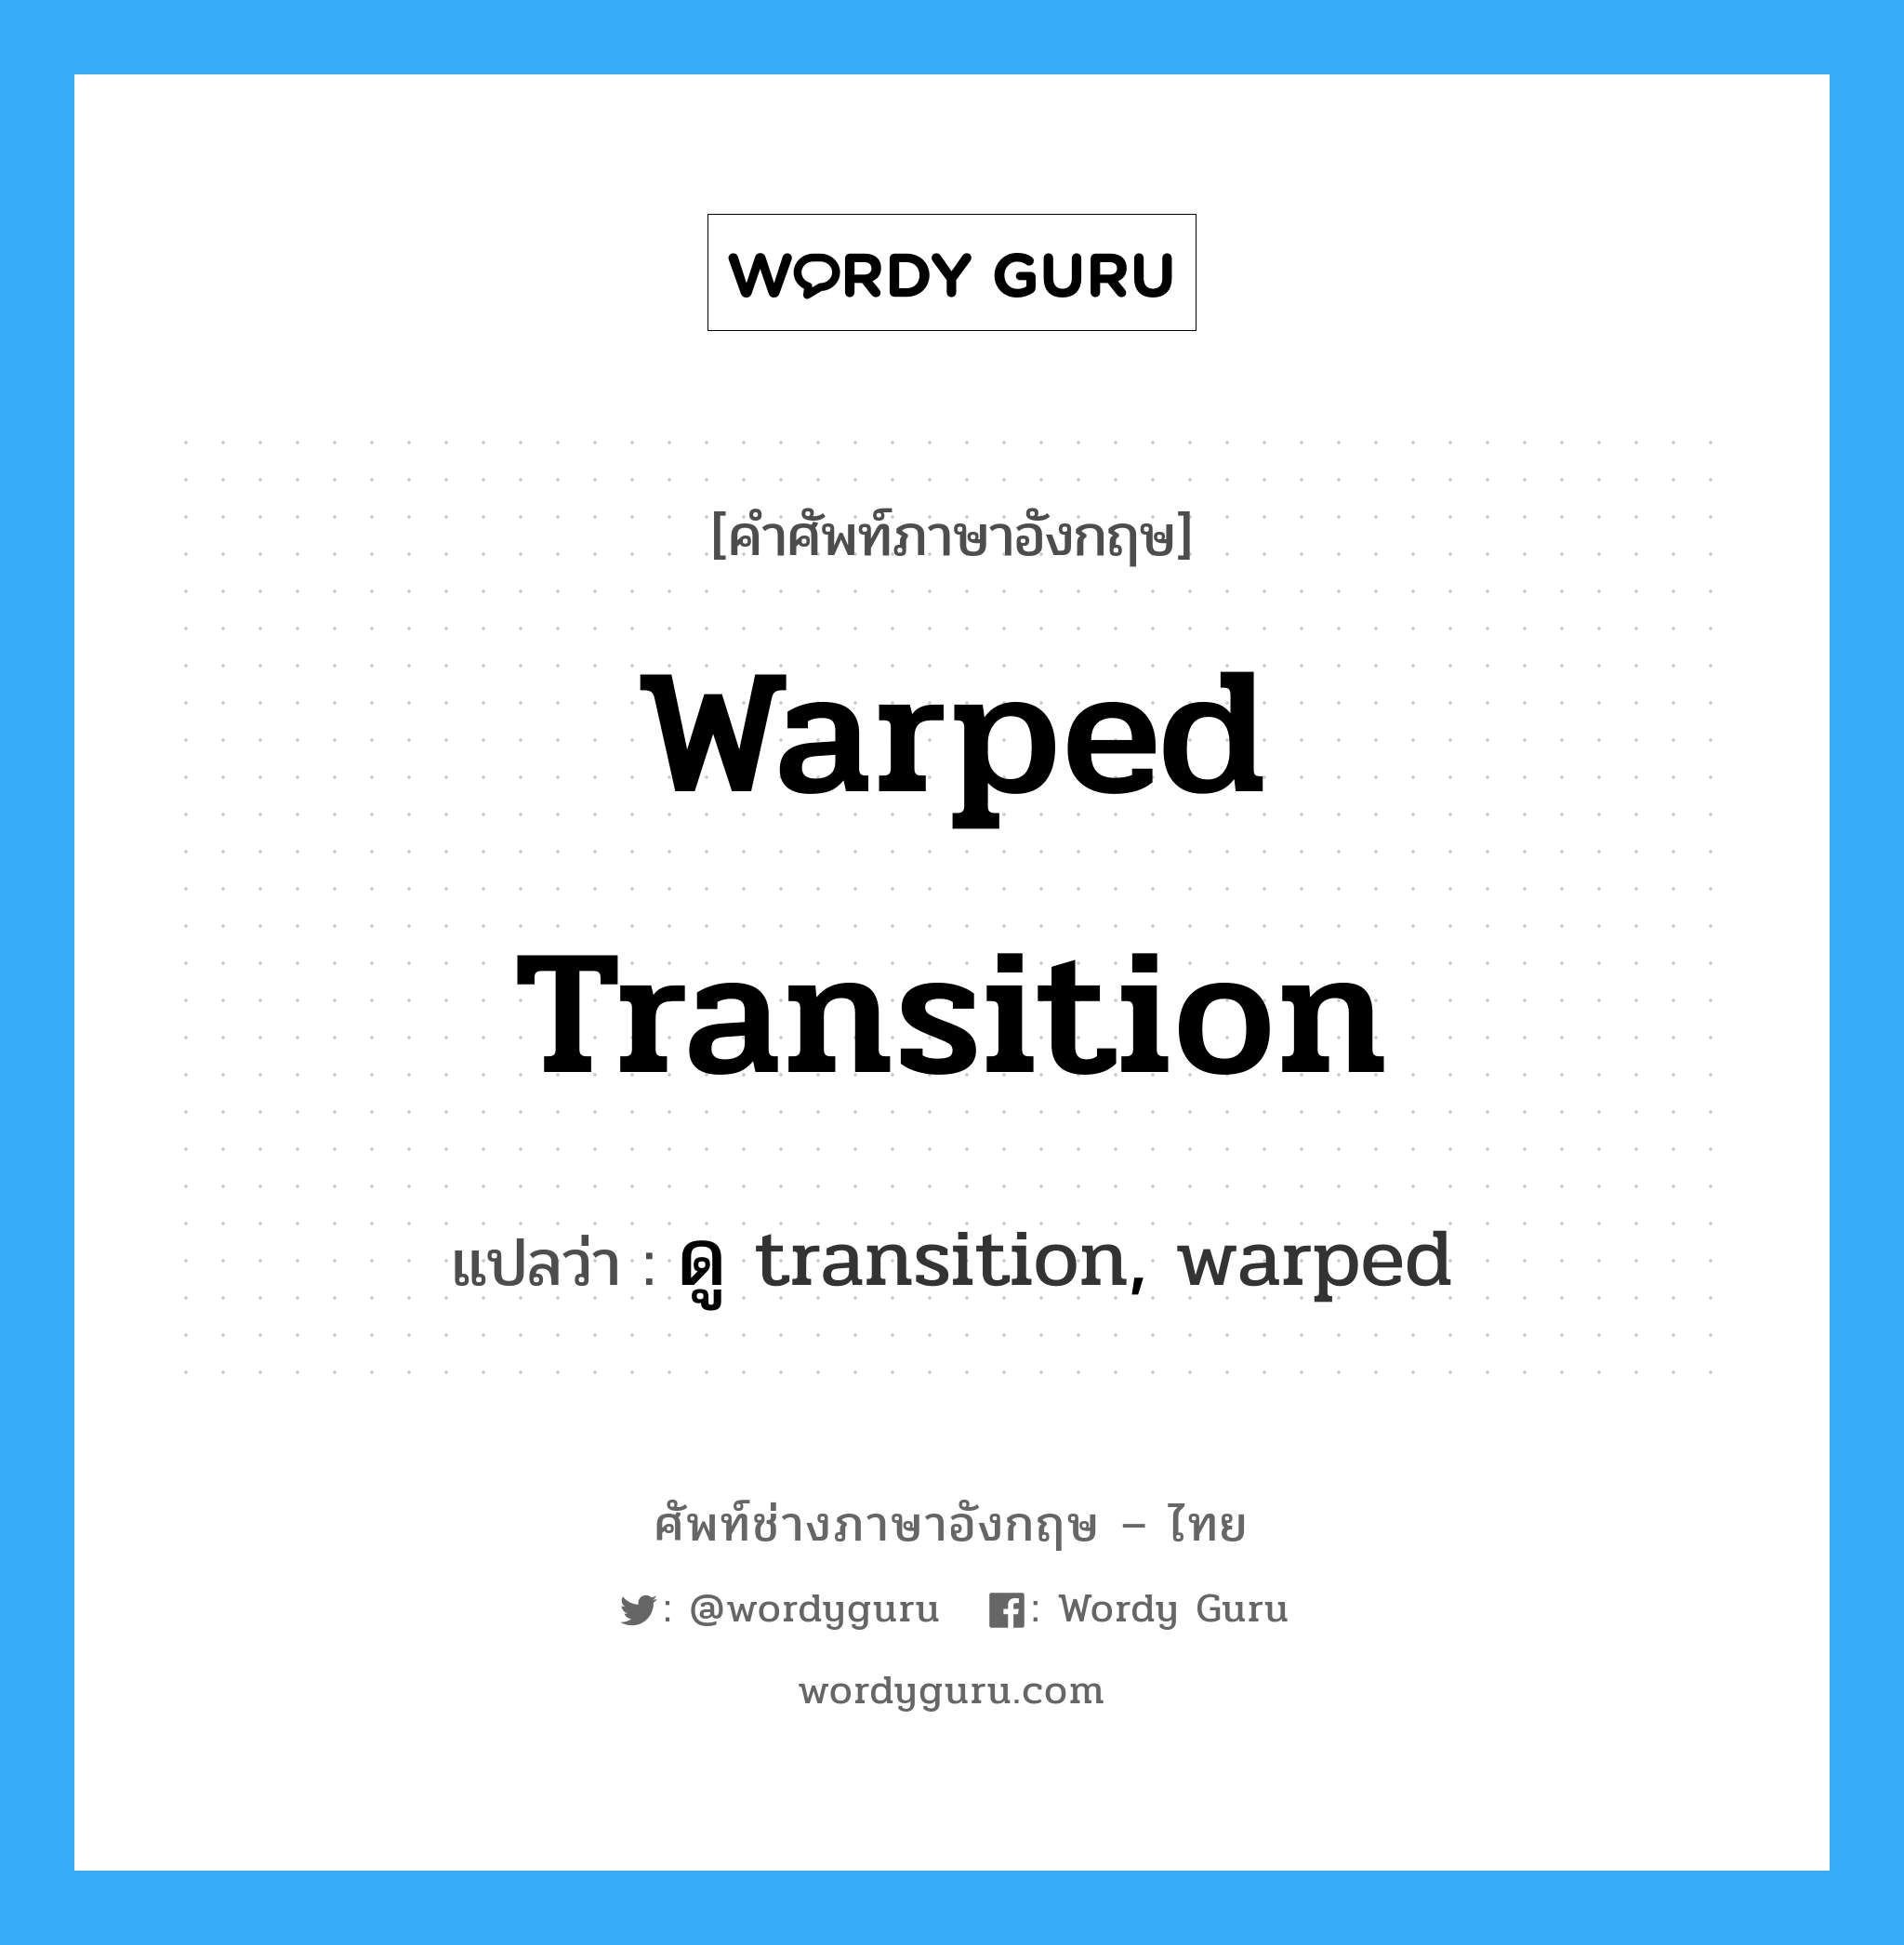 ดู transition, warped ภาษาอังกฤษ?, คำศัพท์ช่างภาษาอังกฤษ - ไทย ดู transition, warped คำศัพท์ภาษาอังกฤษ ดู transition, warped แปลว่า warped transition